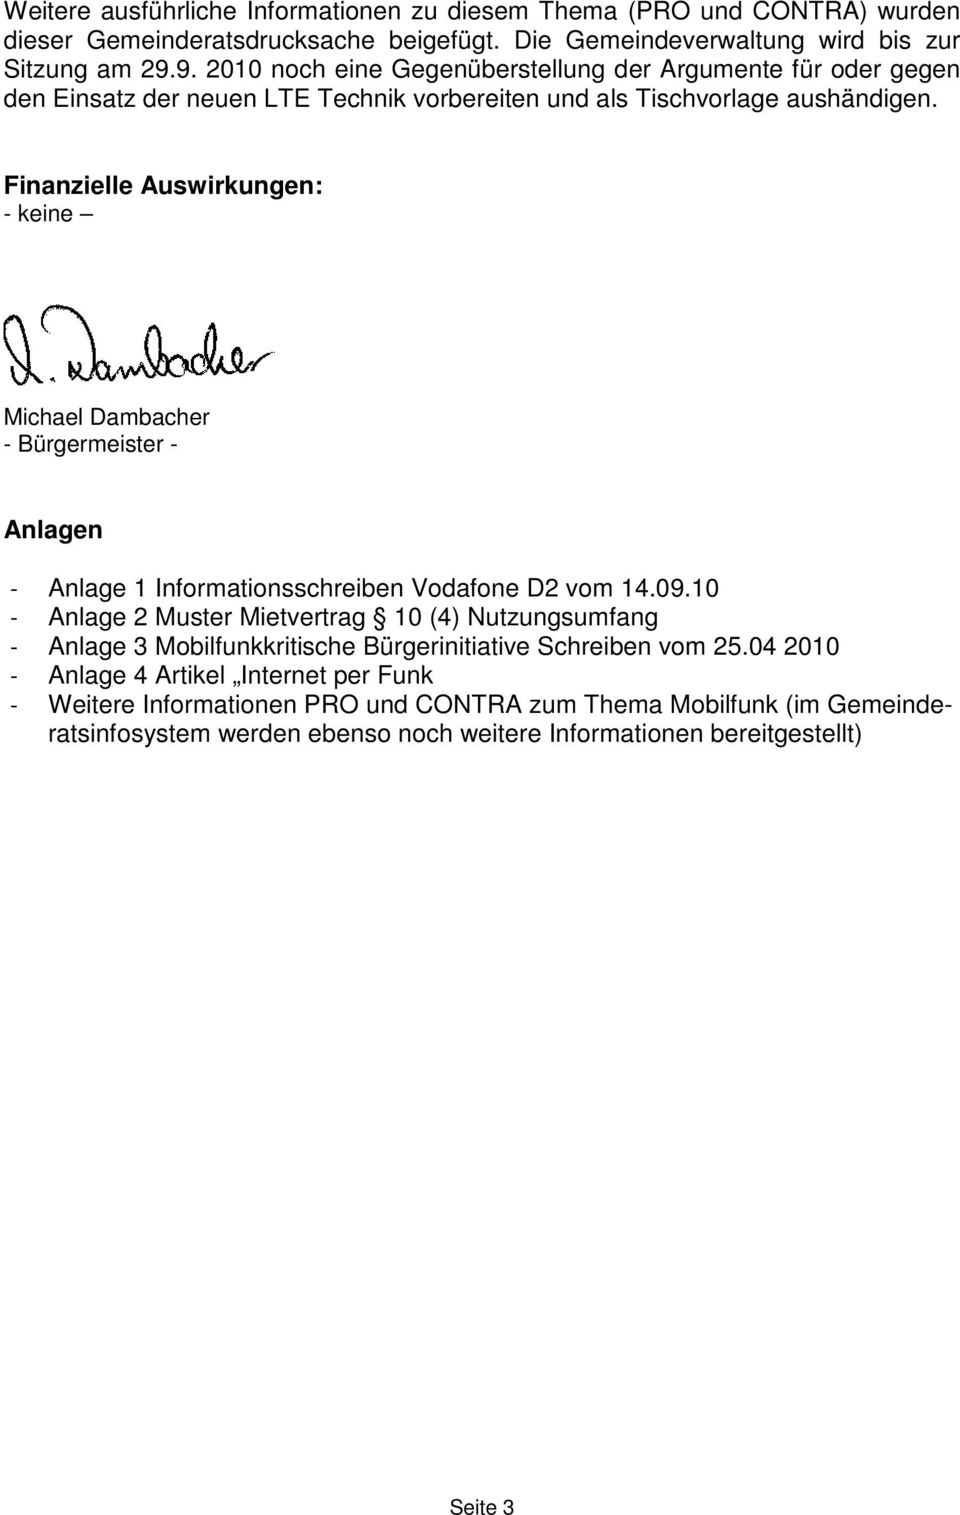 Finanzielle Auswirkungen: - keine Michael Dambacher - Bürgermeister - Anlagen - Anlage 1 Informationsschreiben Vodafone D2 vom 14.09.